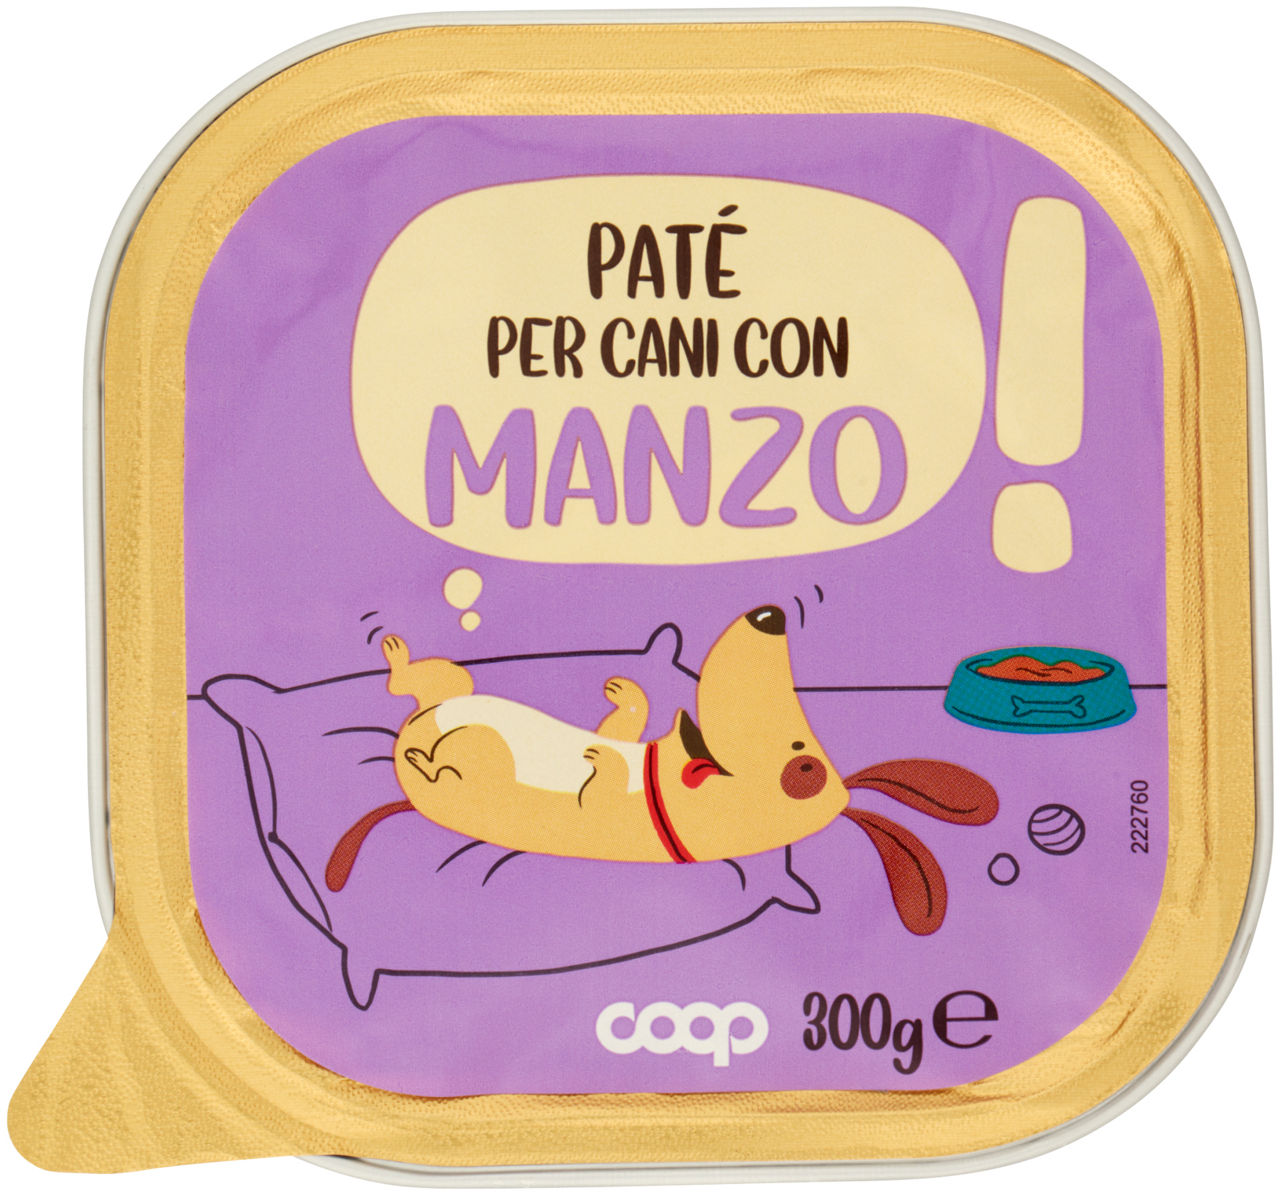 UMIDO CANE PATÈ PER CANE MANZO VASCHETTA COOP G300 - 0